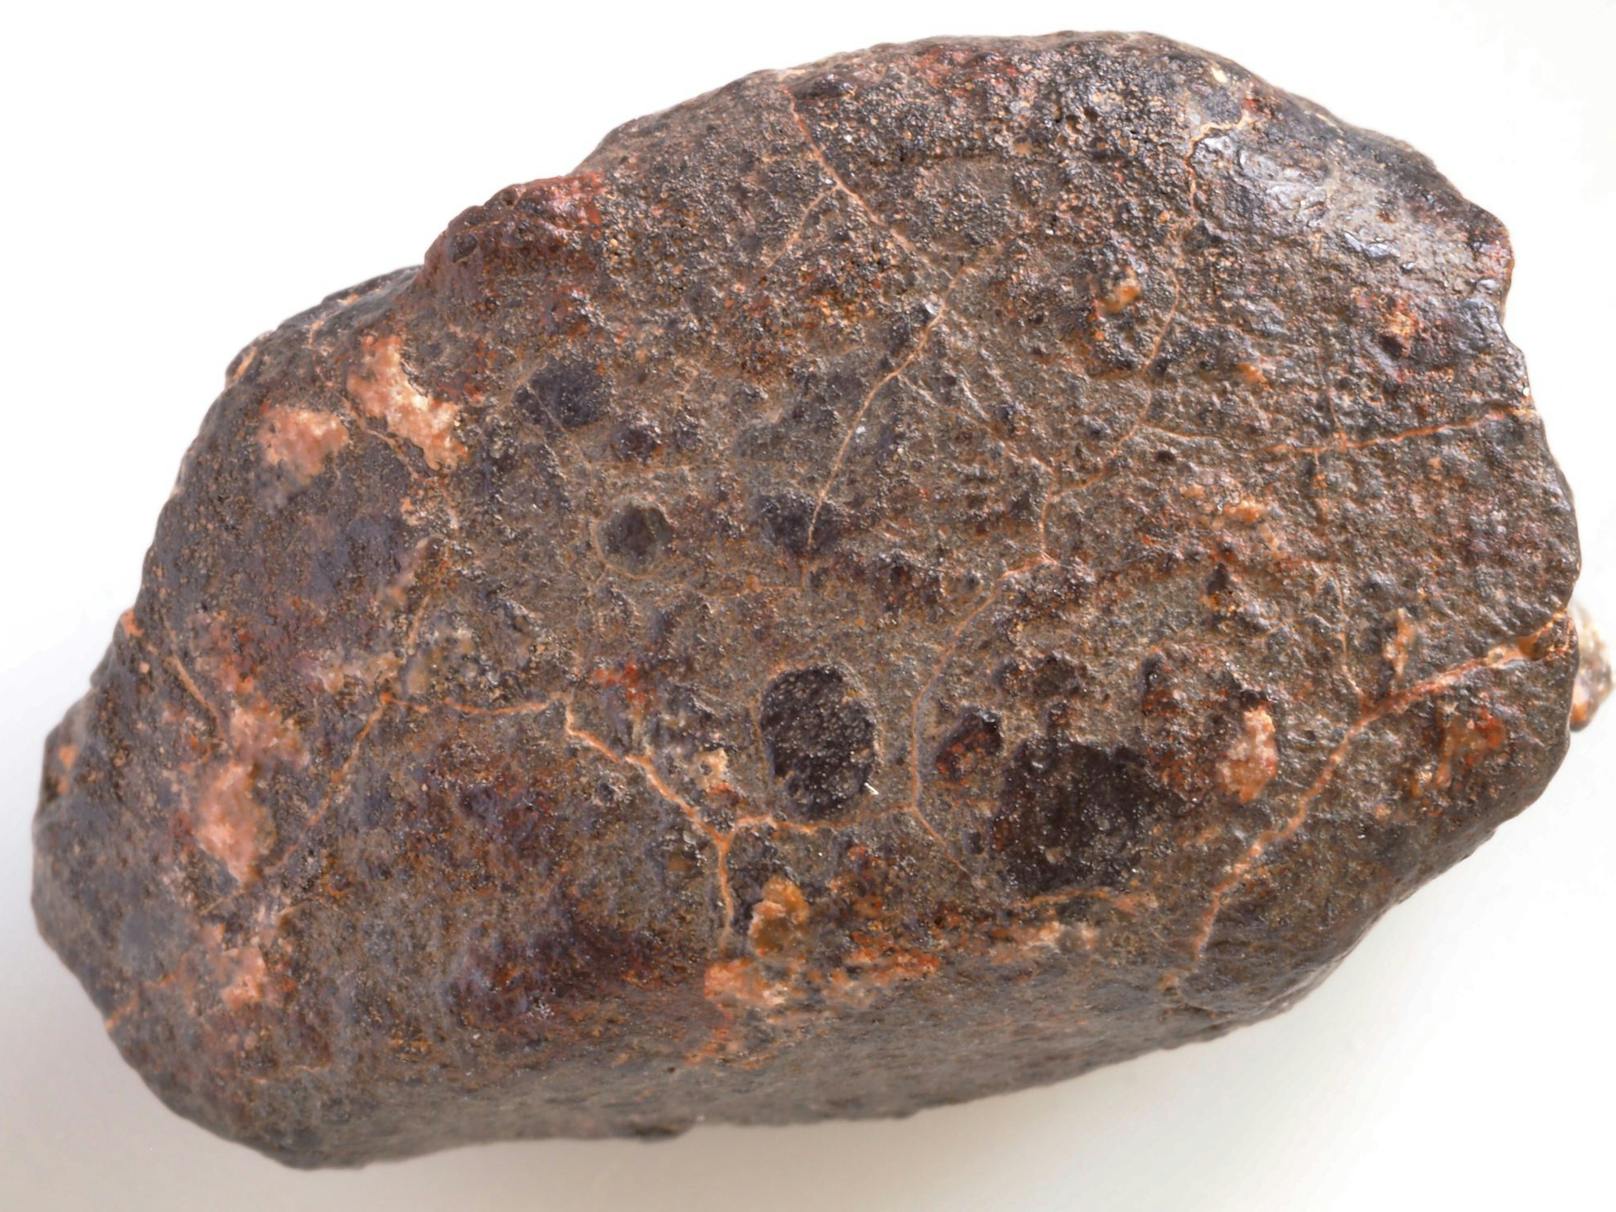 Über 1,5 Tonnen des Meteoriten "NWA 869" wurden um die Jahrtausendwende in Nordwestafrika geborgen